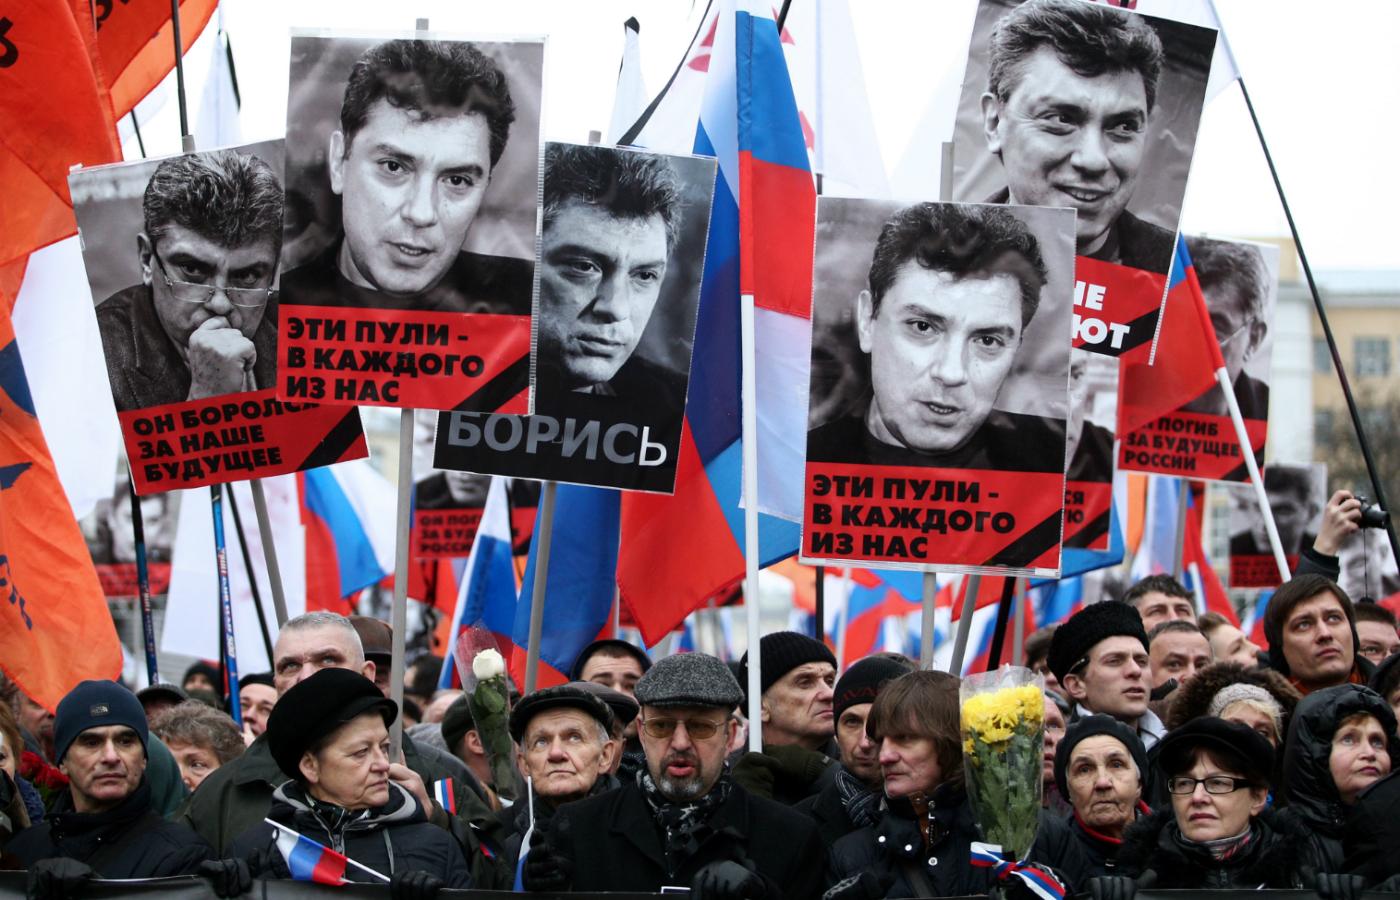 „On zginął za przyszłość Rosji” – napis na jednym z transparentów podczas marszu w hołdzie zamordowanemu Borysowi Niemcowowi. Moskwa, 1 marca 2015 r.